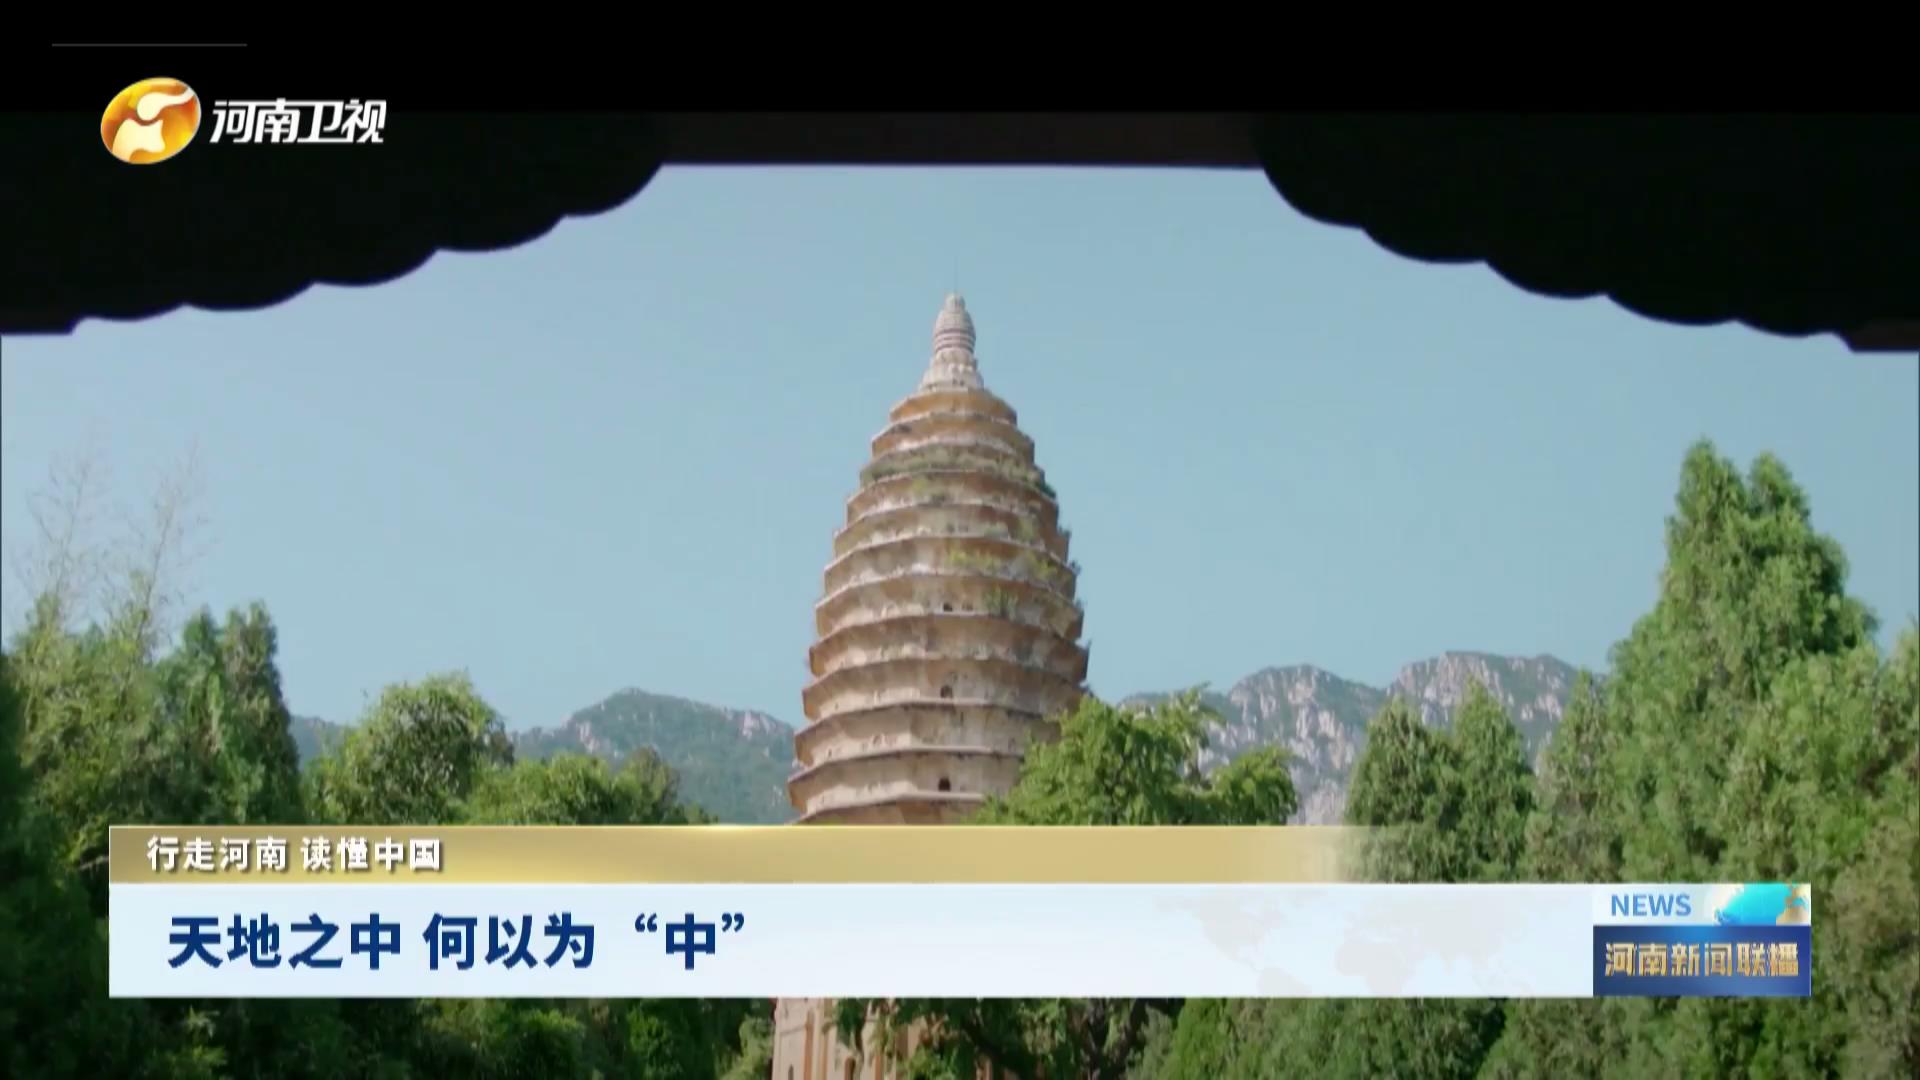 天空之眼瞰中国登封天地之中历史建筑群呈现东方文化 - 图说世界 - 龙腾网